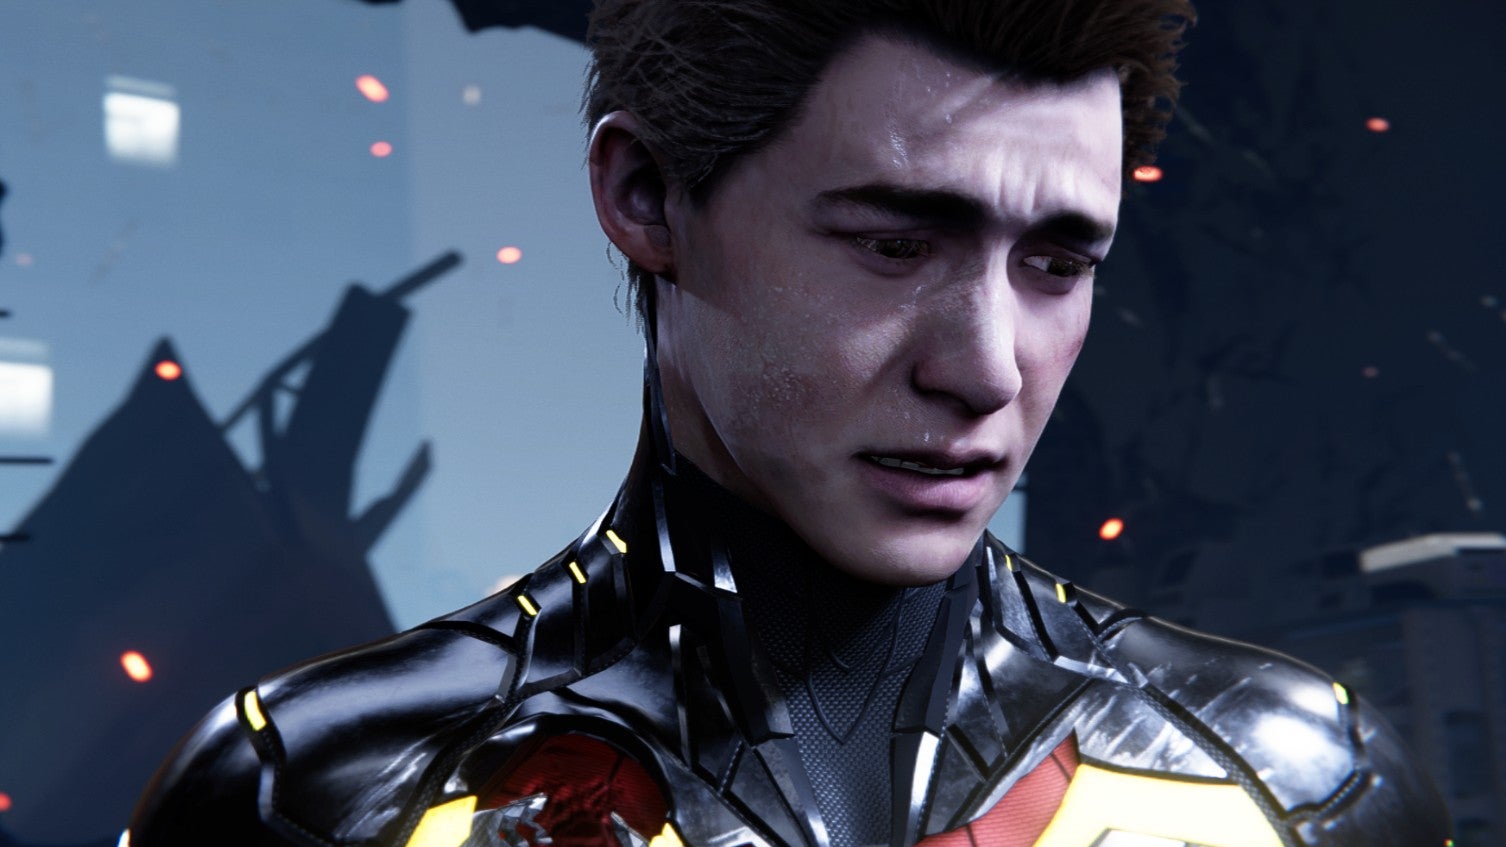 Marvel's Spider-Man PC mod brings back Peter Parker's original face